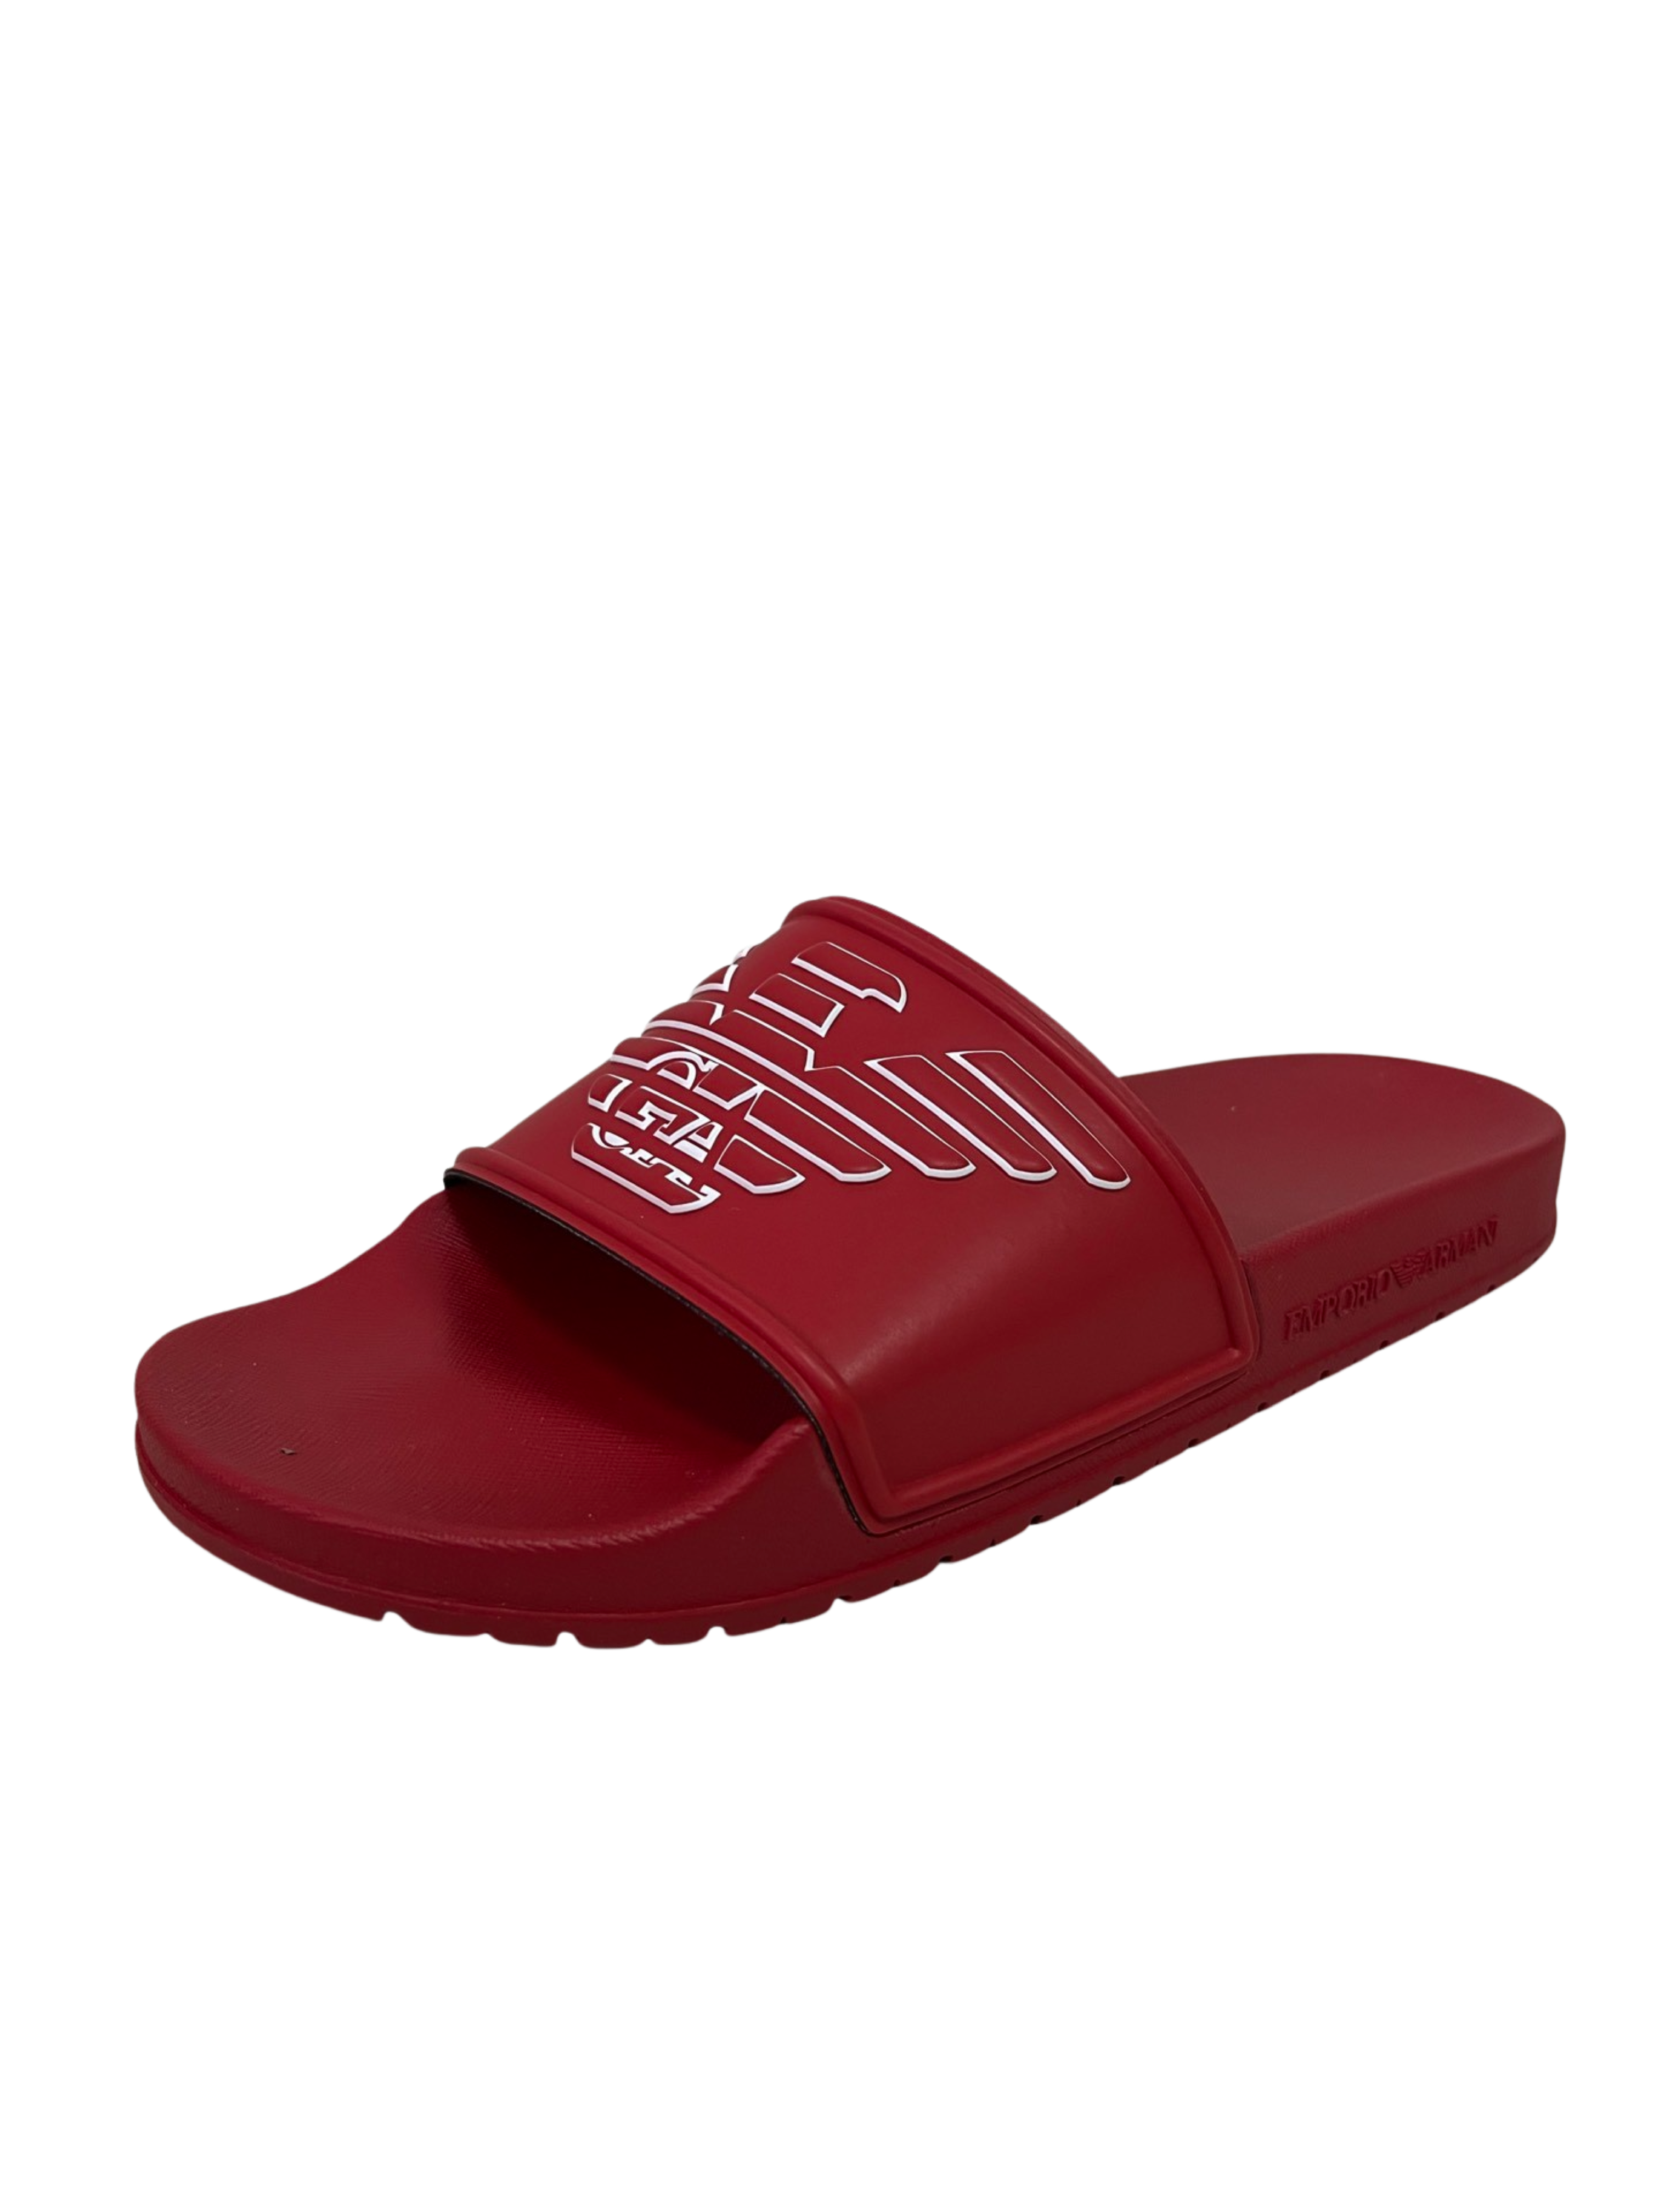 Emporio Armani slippers